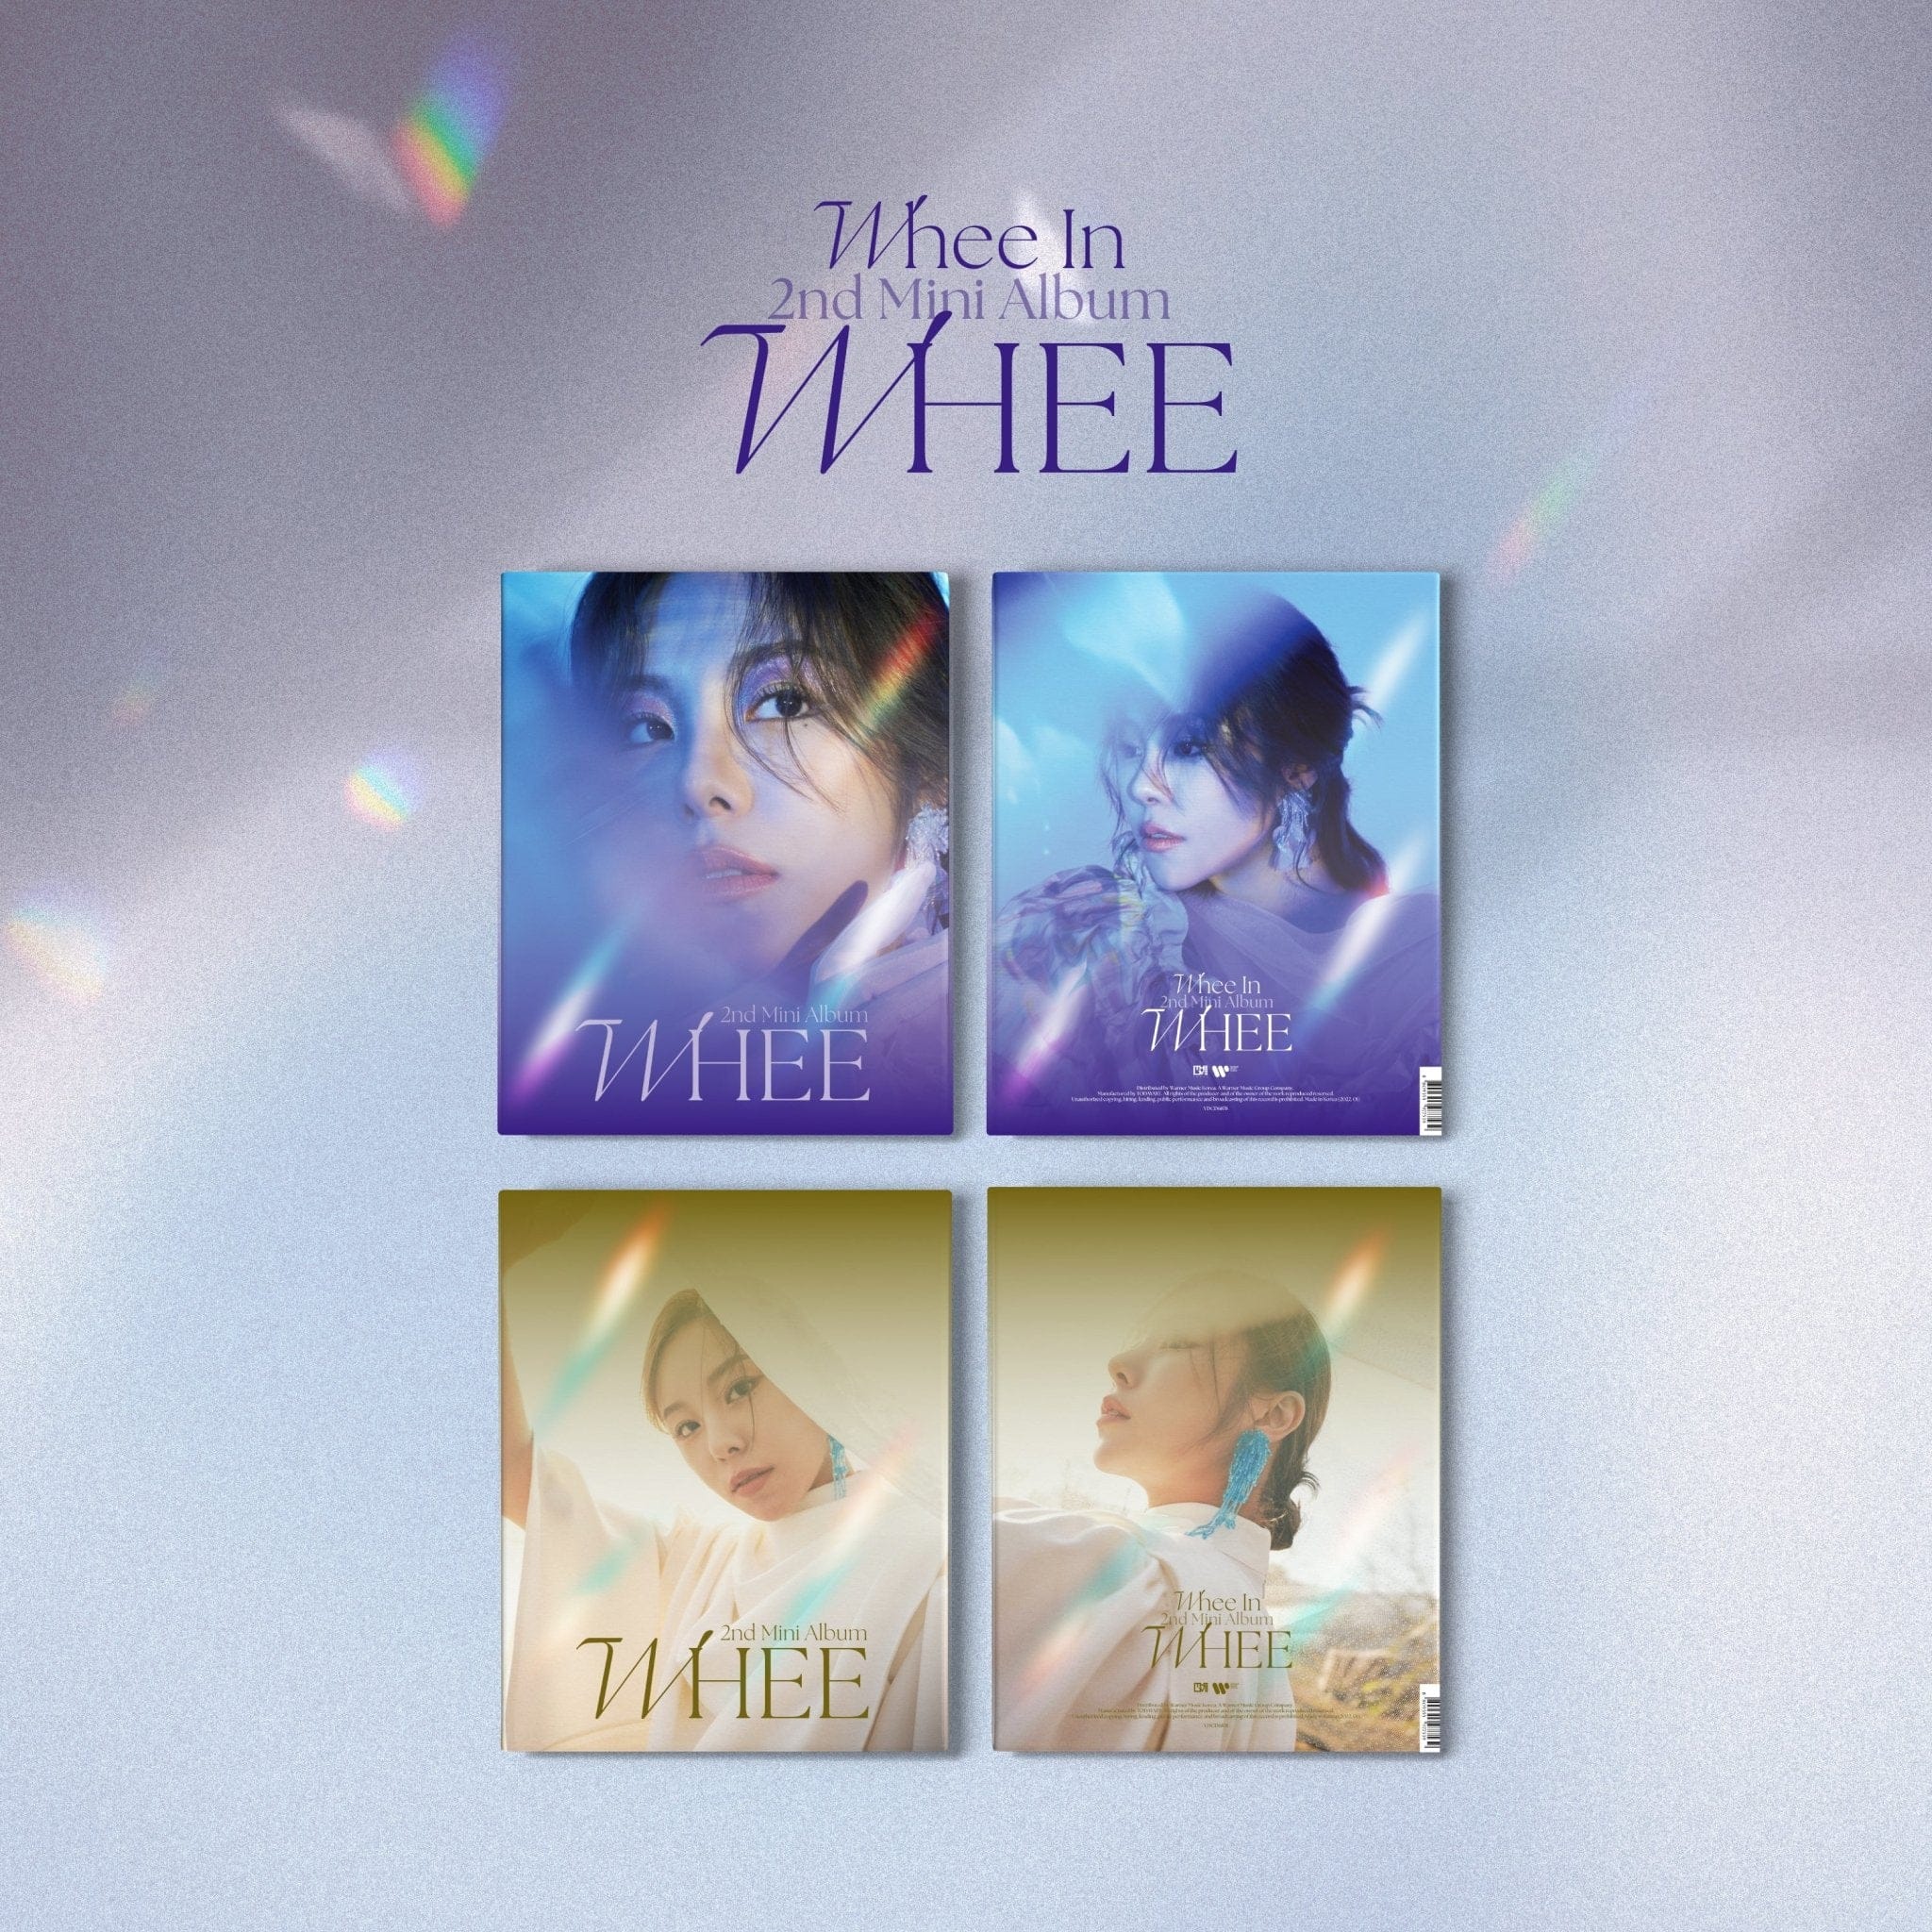 Whee In - 2nd Mini Album [WHEE] - Kpop Story US